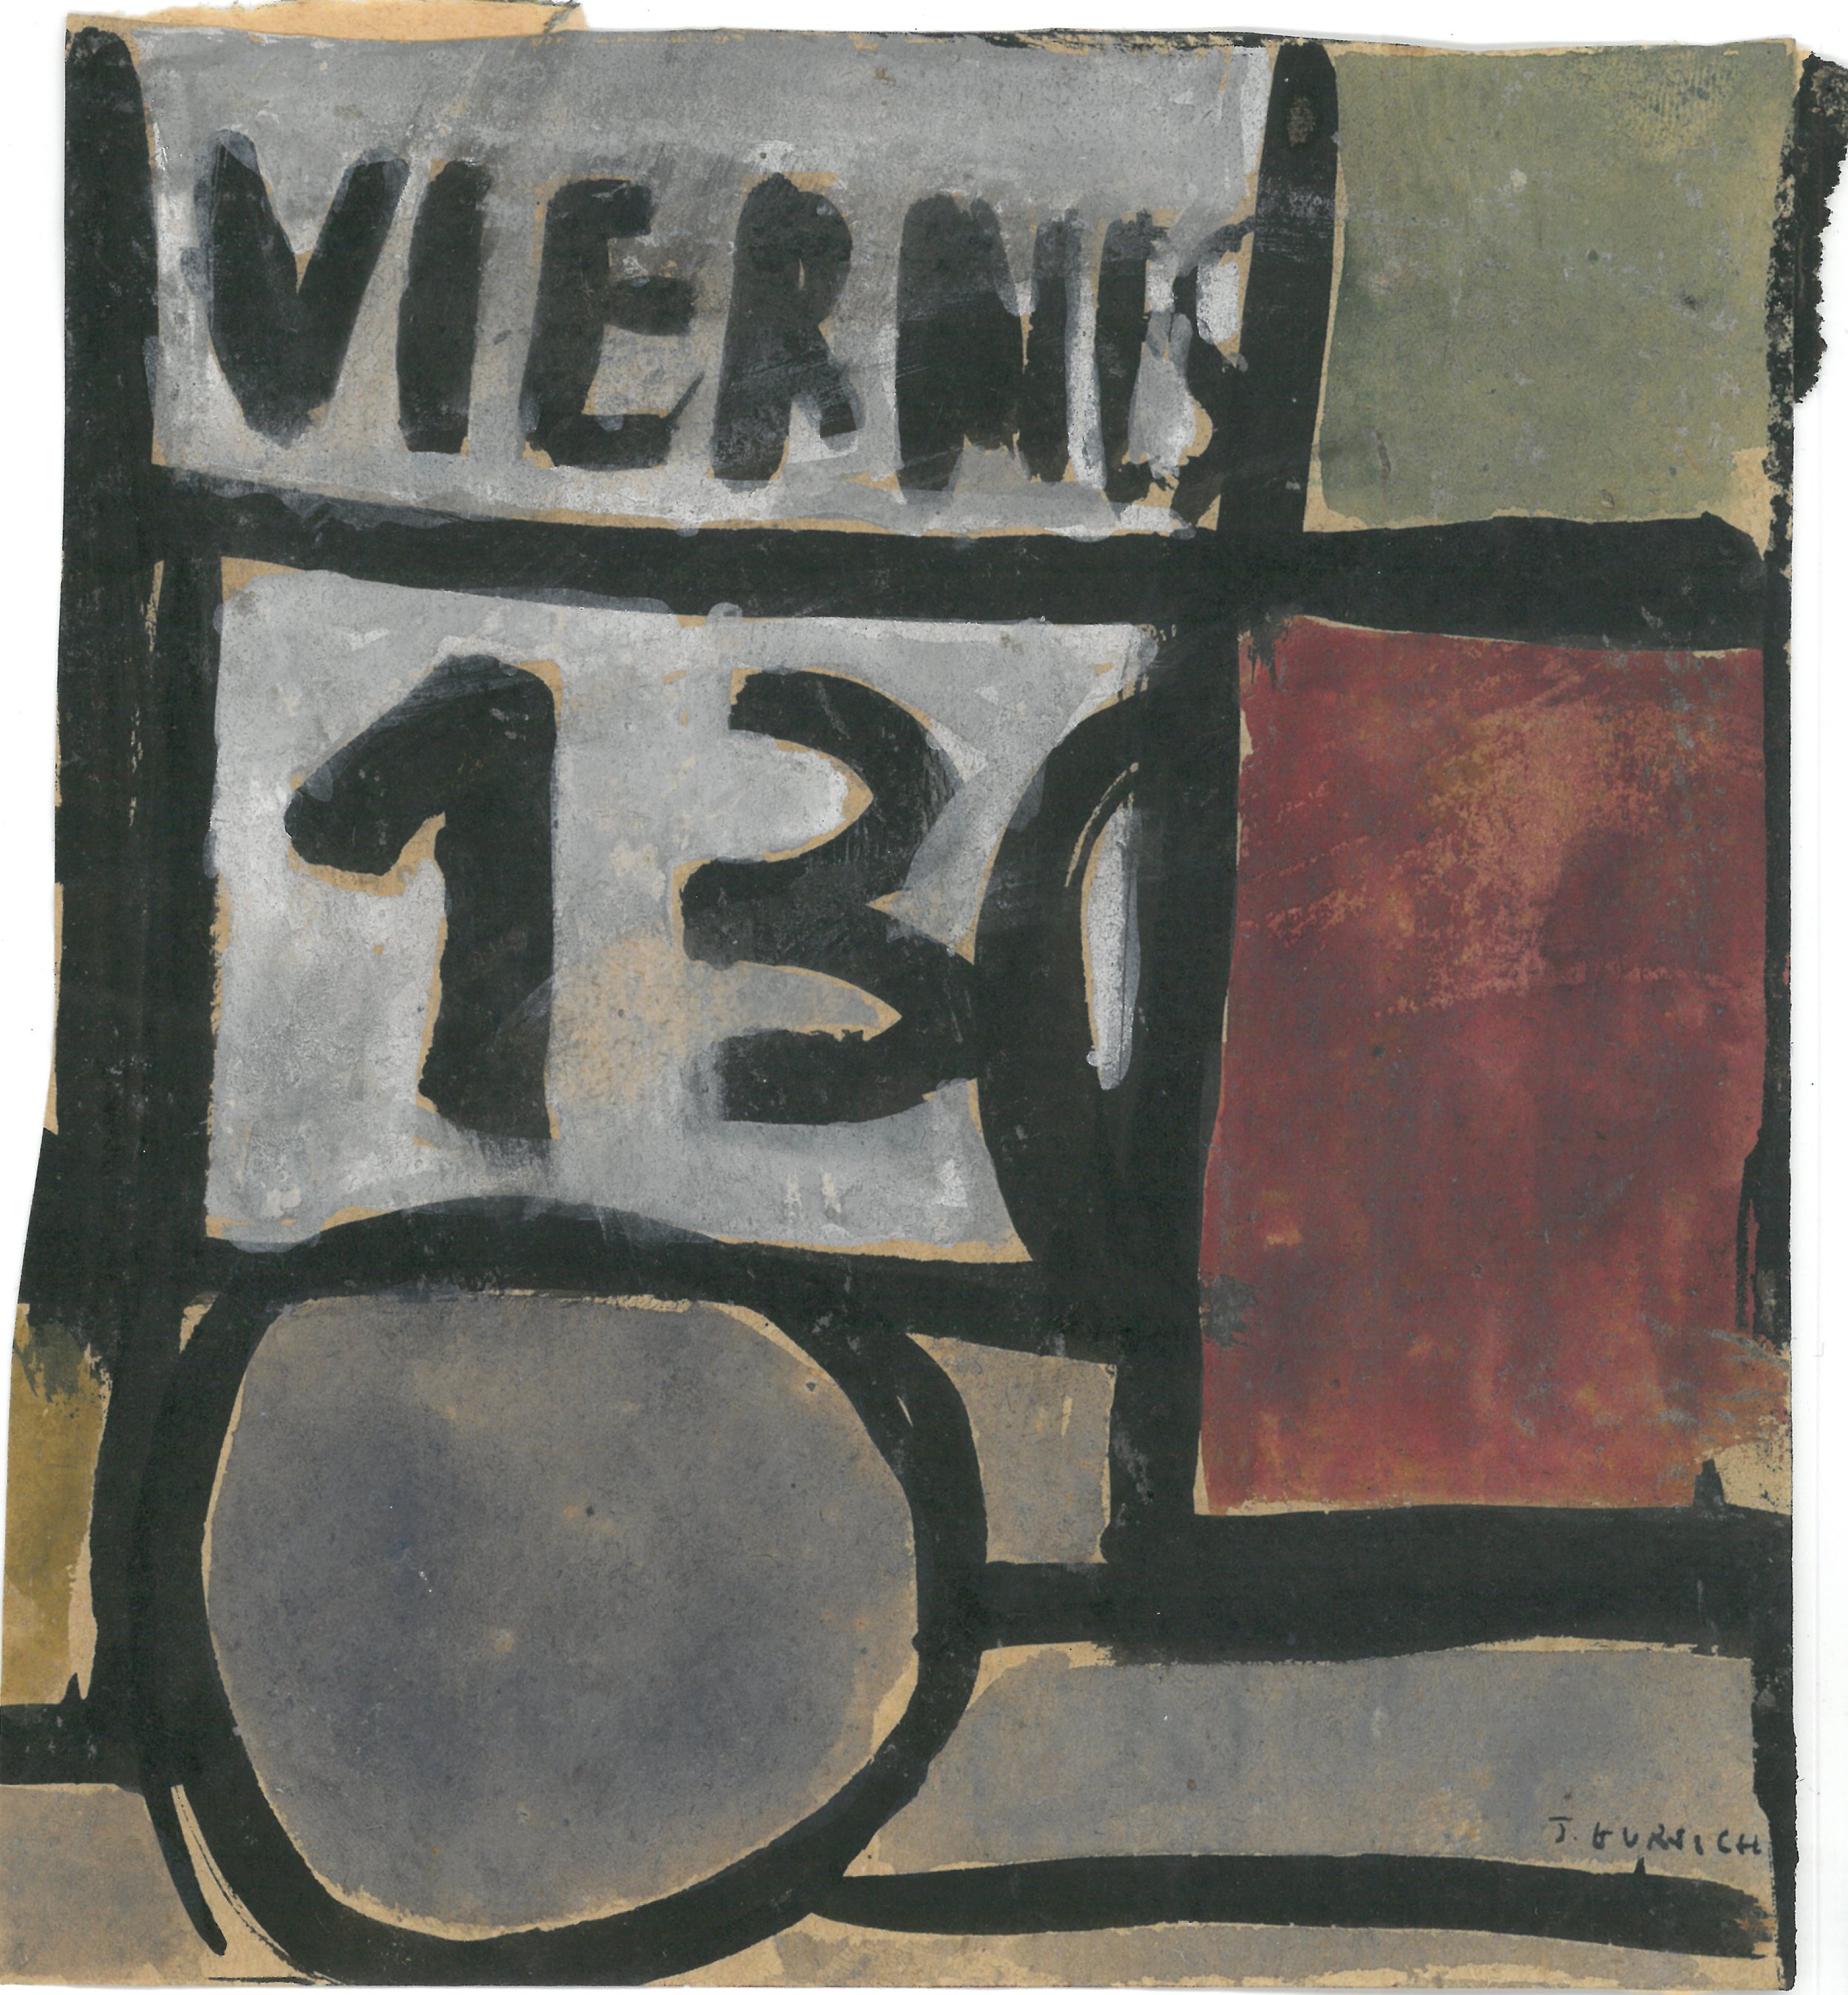 Pág.158 , Viernes, c.1949, témpera sobre papel, 17 x 15 cm.jpg